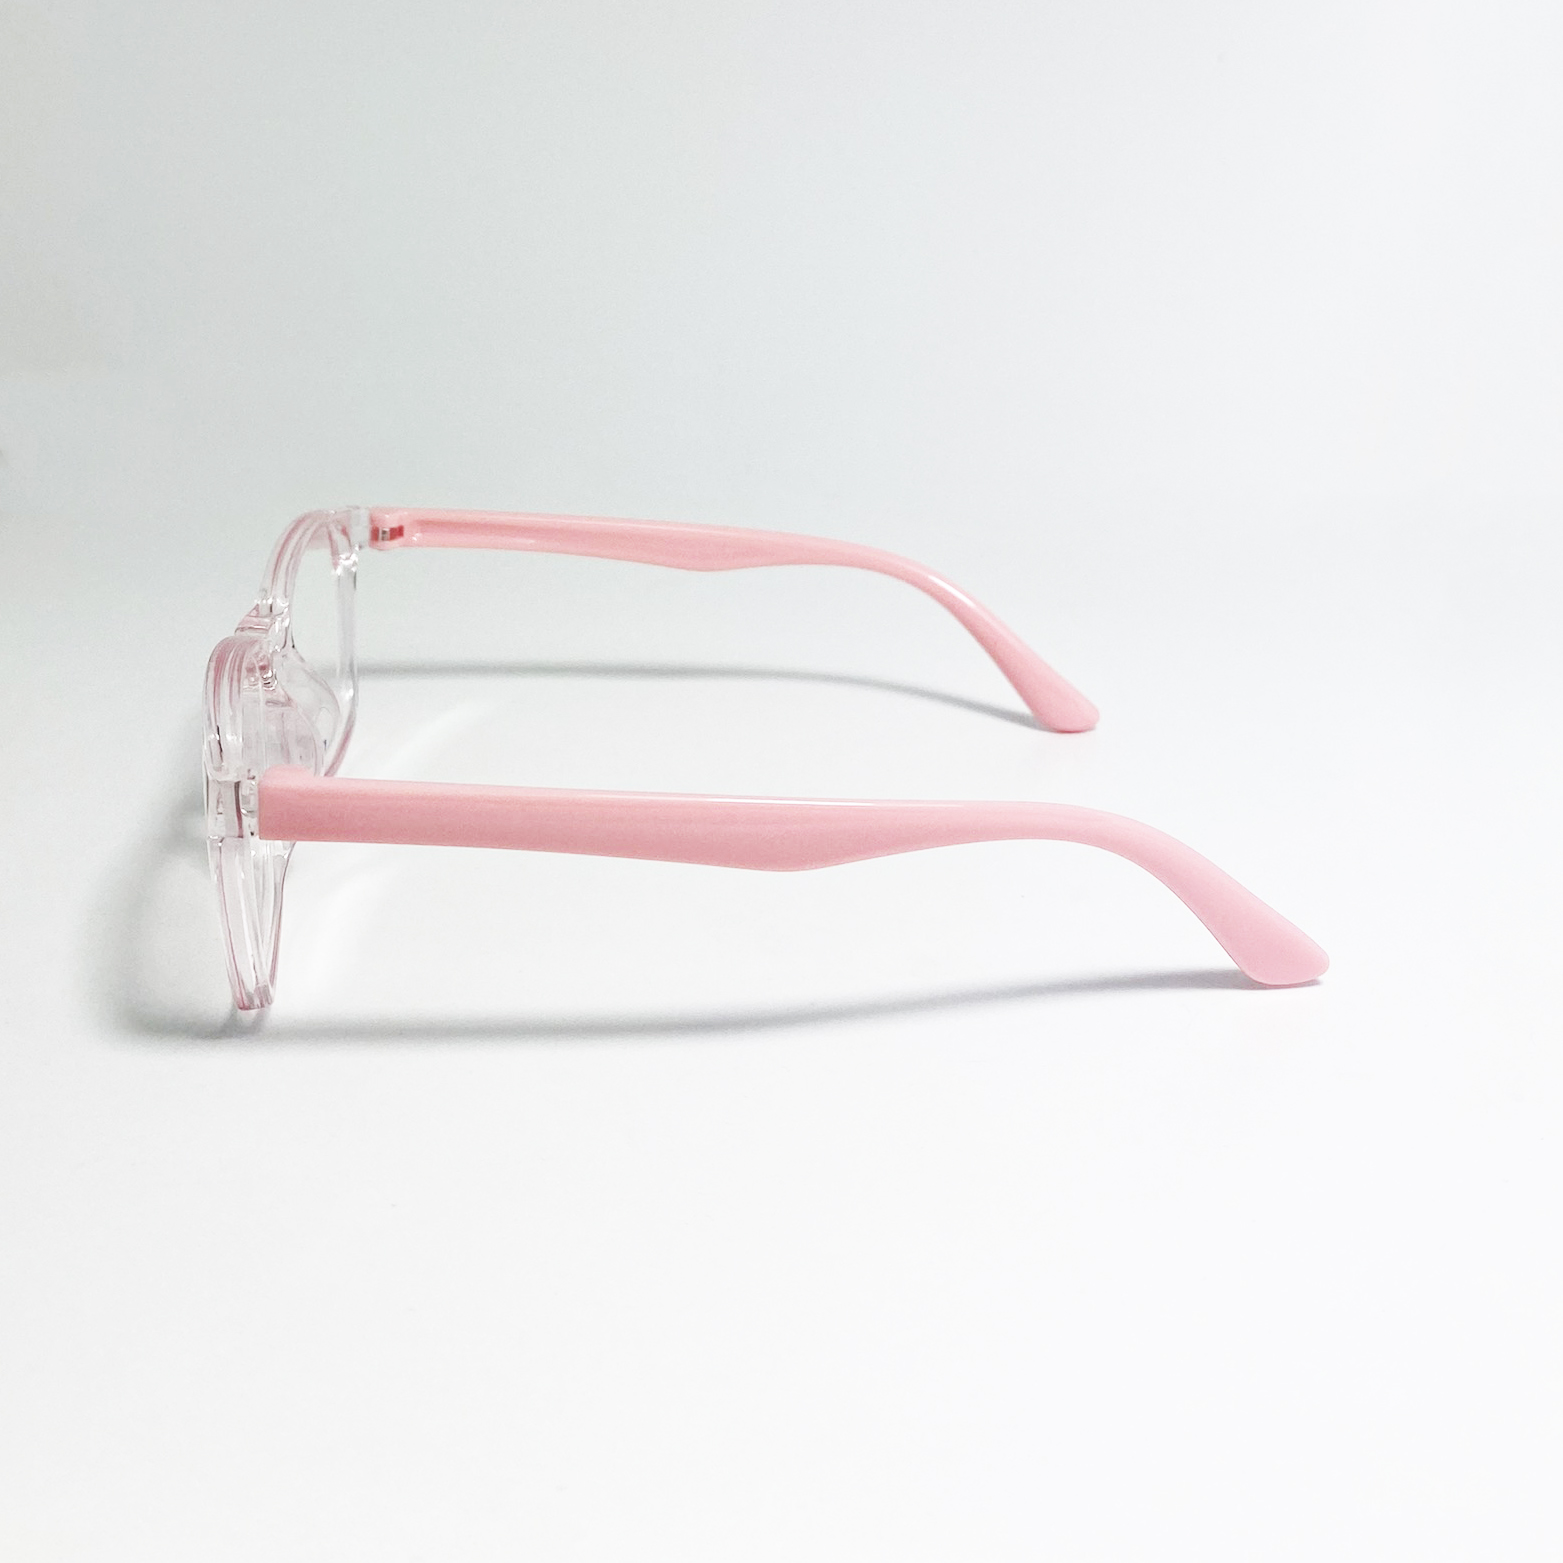 Mắt kính giả cận trẻ em Jun Secret gọng nhựa dẻo, kiểu kính giả cận, tròng hình chữ nhật đơn giản dễ thương dành cho bé trai, bé gái JS0034